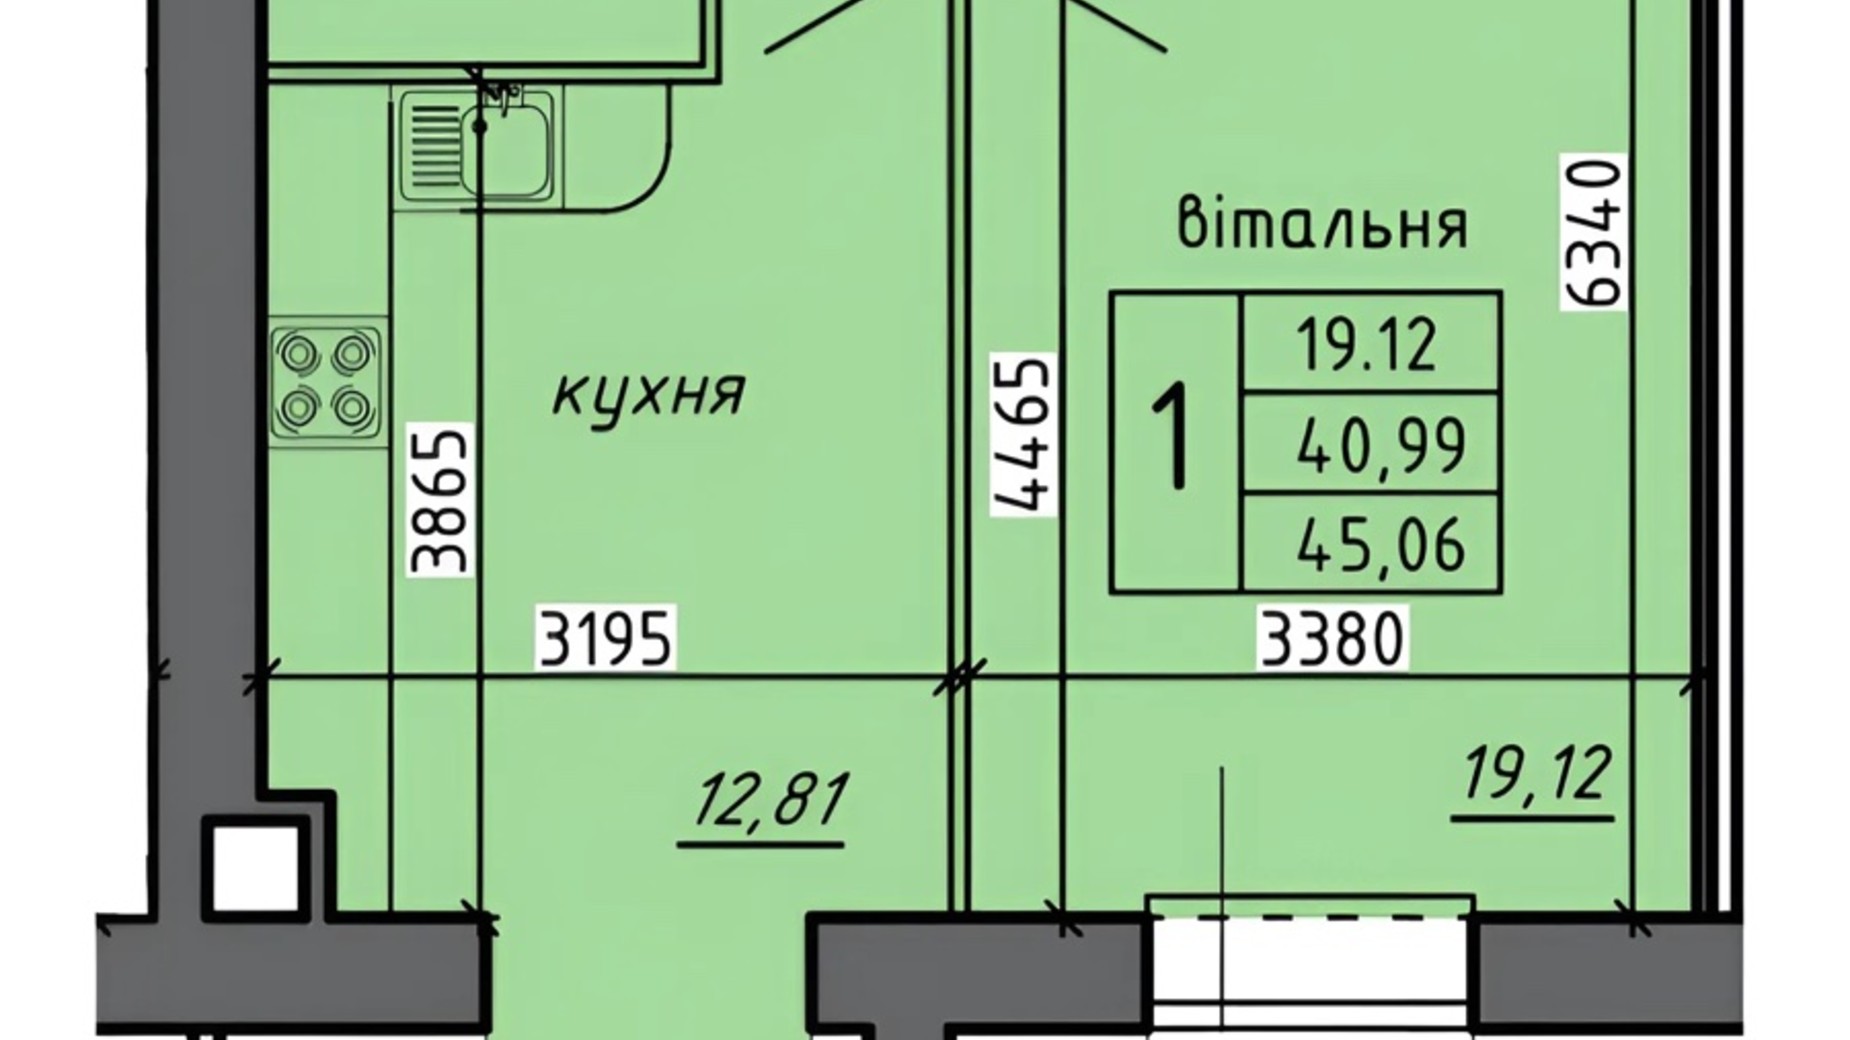 Планировка 1-комнатной квартиры в ЖК Новые Байковцы 45.06 м², фото 672785